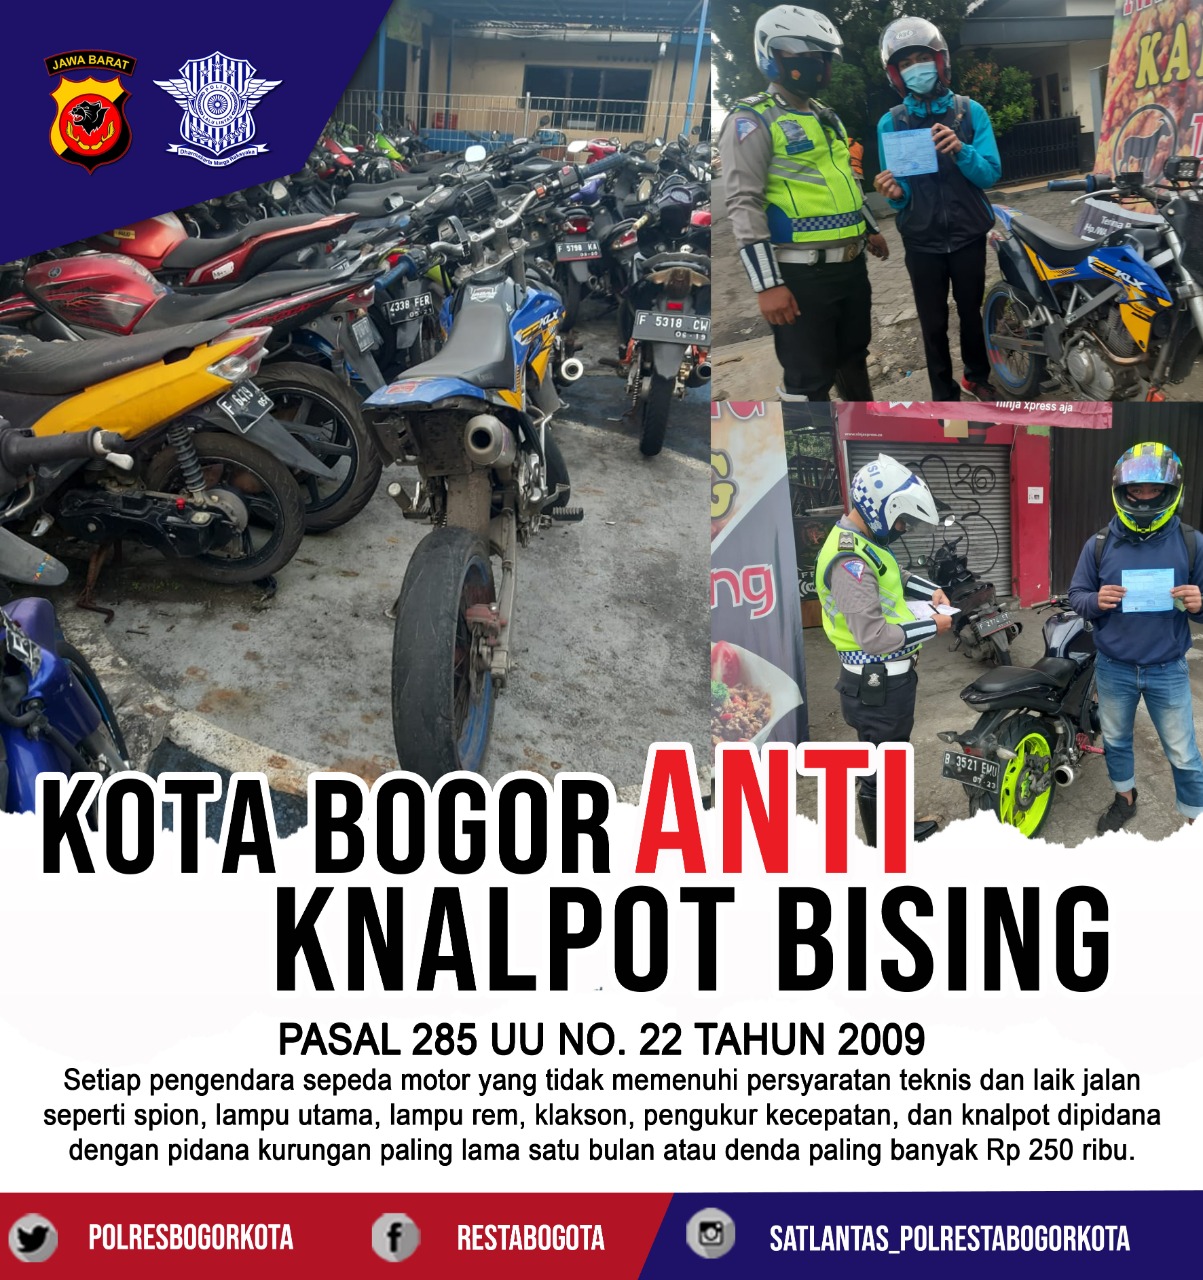 Polres Kota Bogor